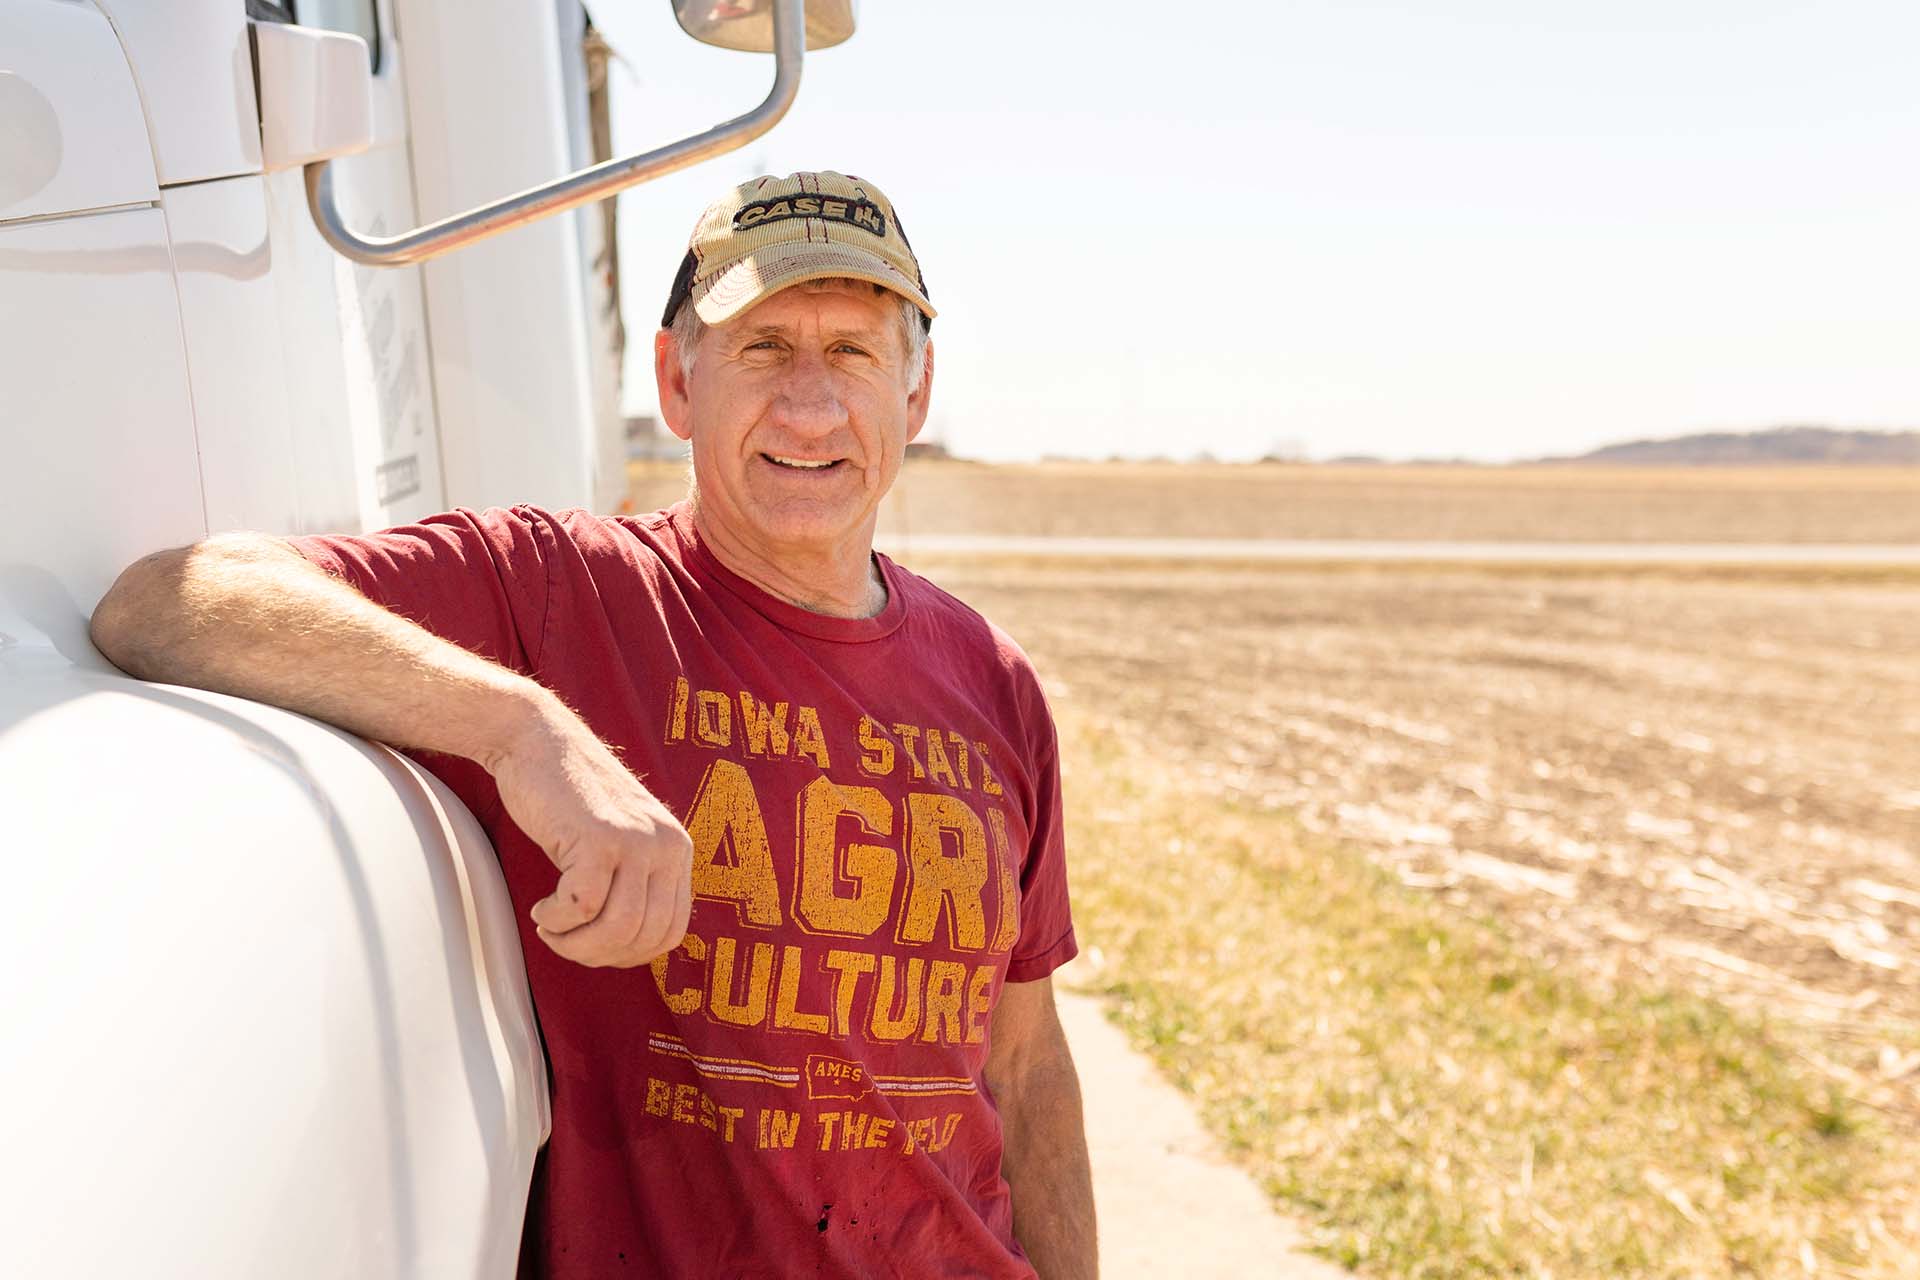 Iowa soybean farmer